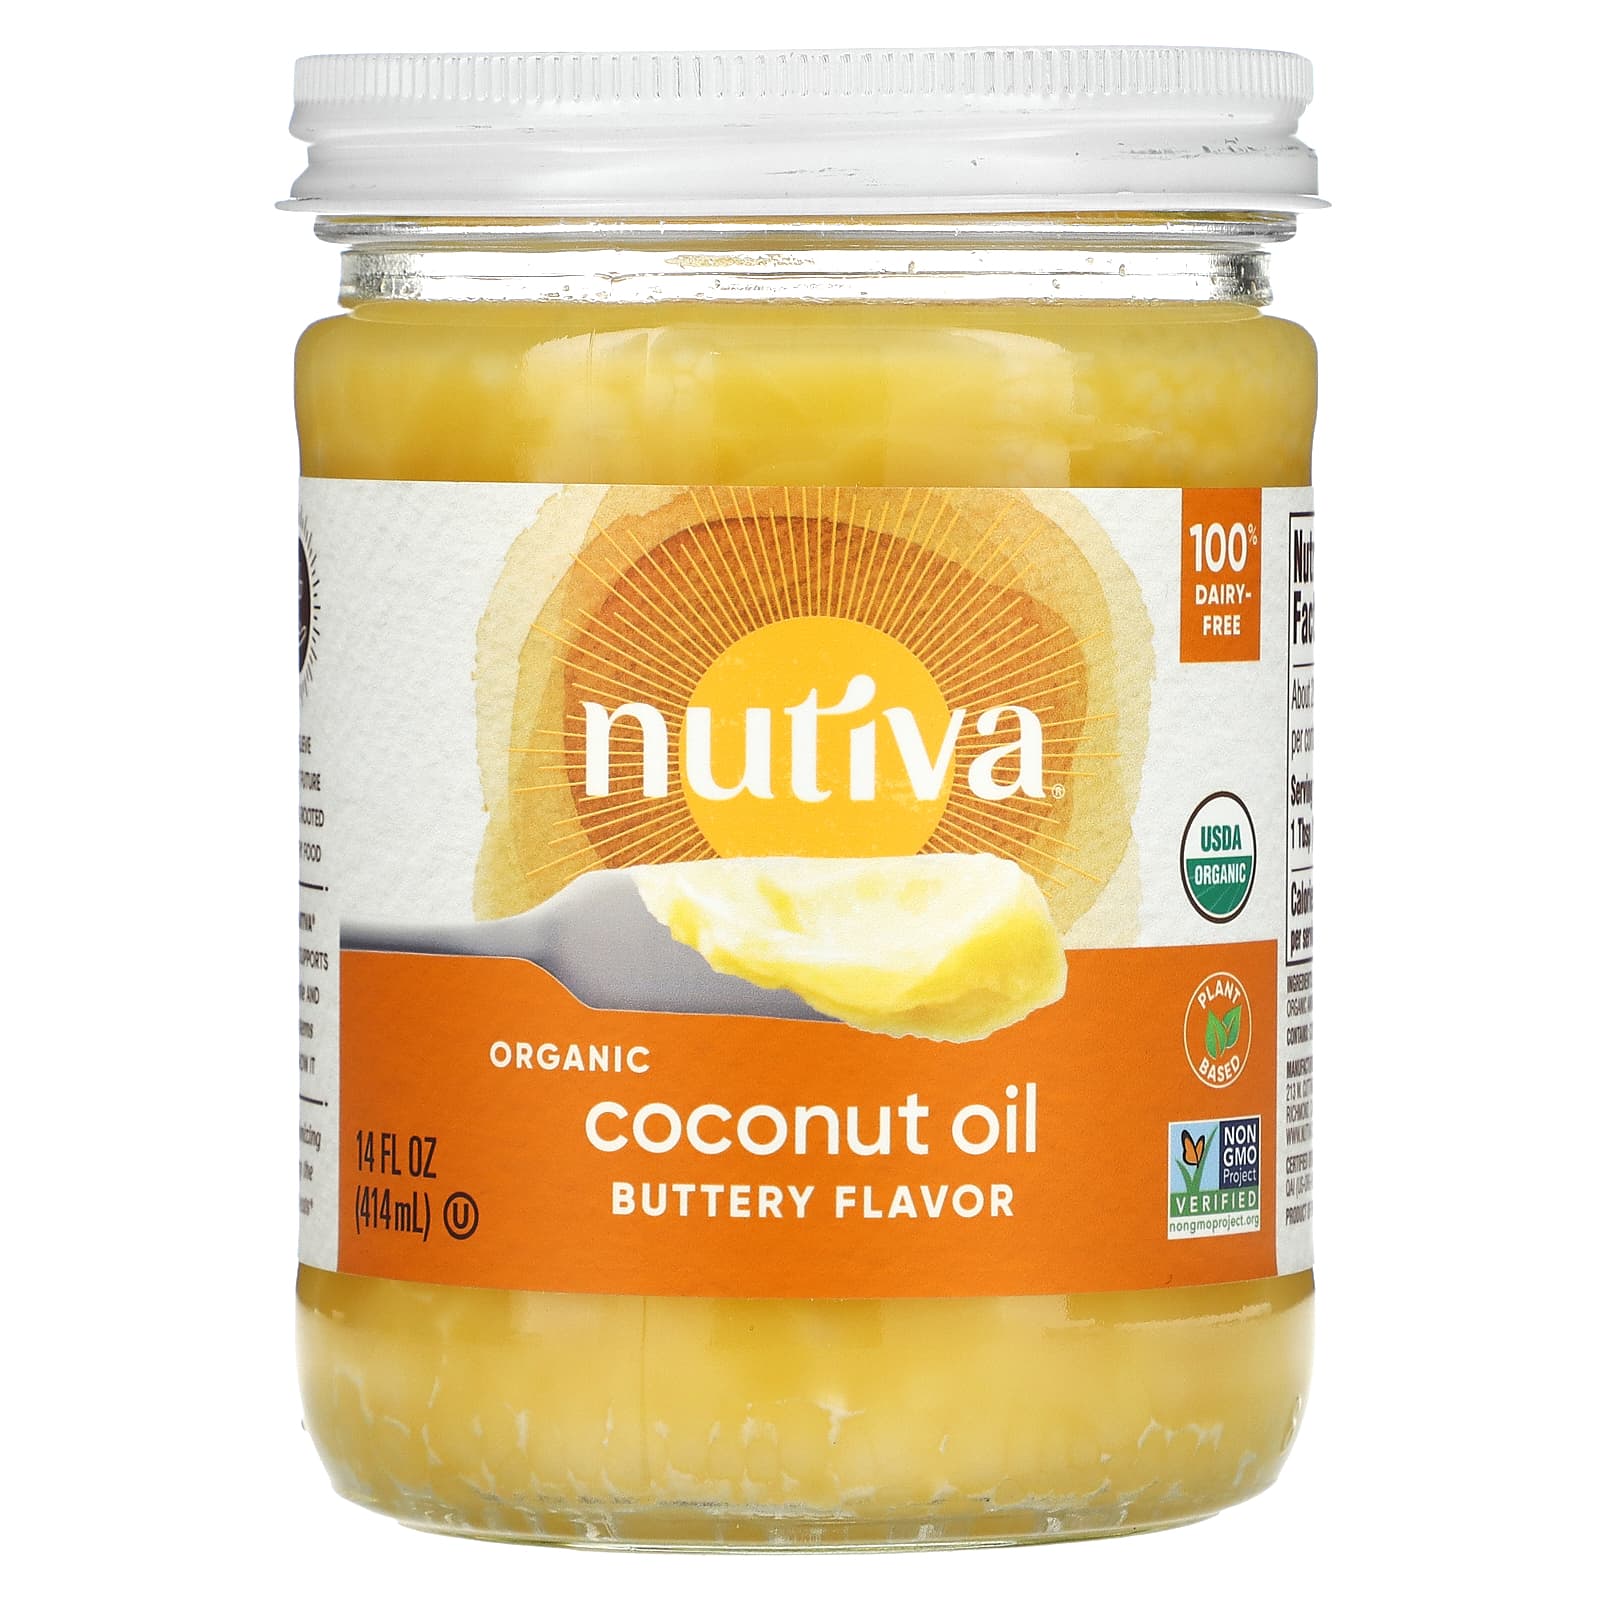 Nutiva Органическое кокосовое масло со вкусом сливочного масла 14 ж. унц. (414 мл) nutiva органическое кокосовое масло virgin 23 жидкие унции 680 мл